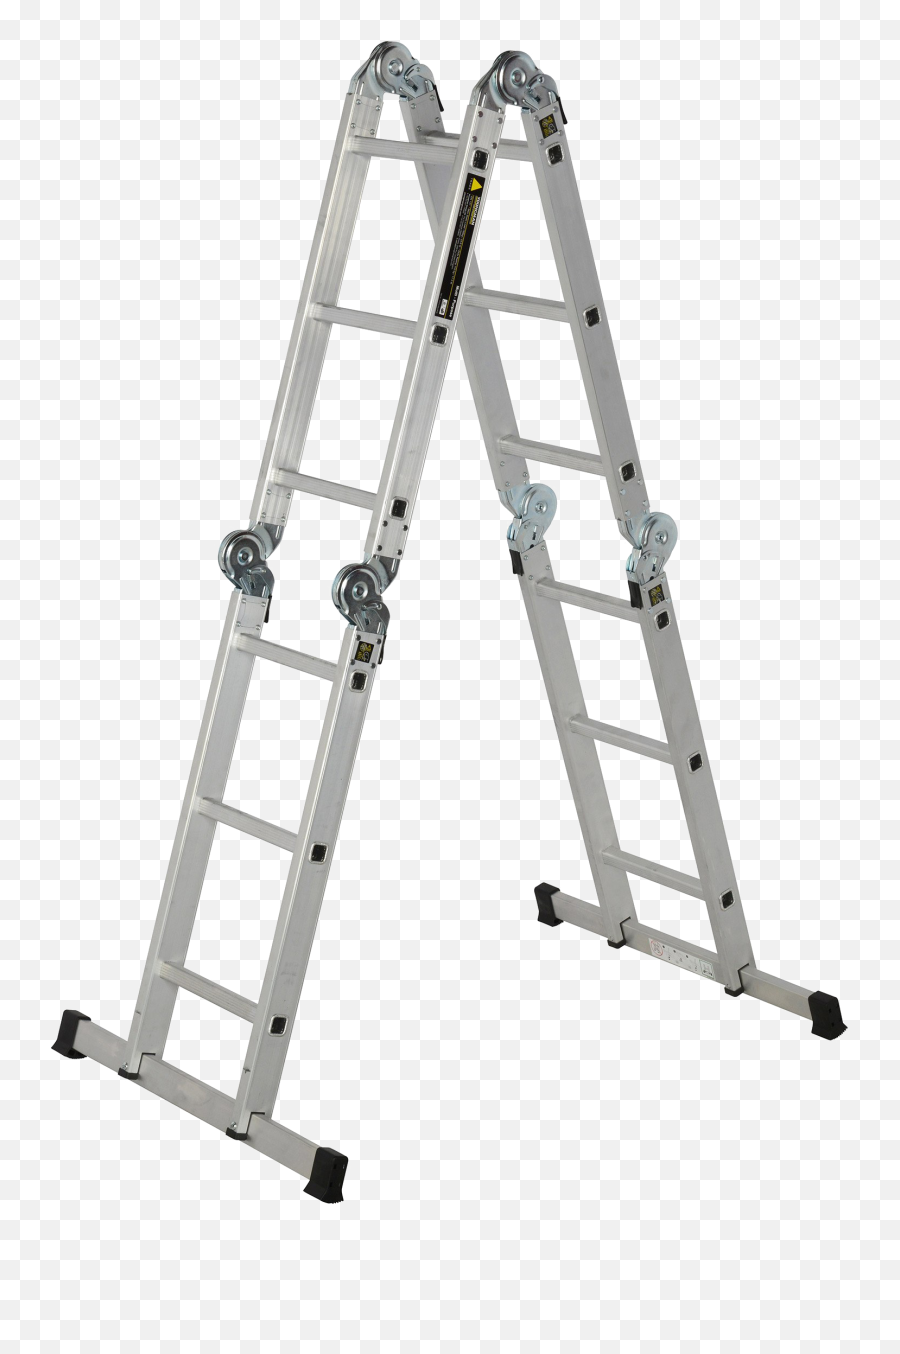 Transparent Png Image Ladder